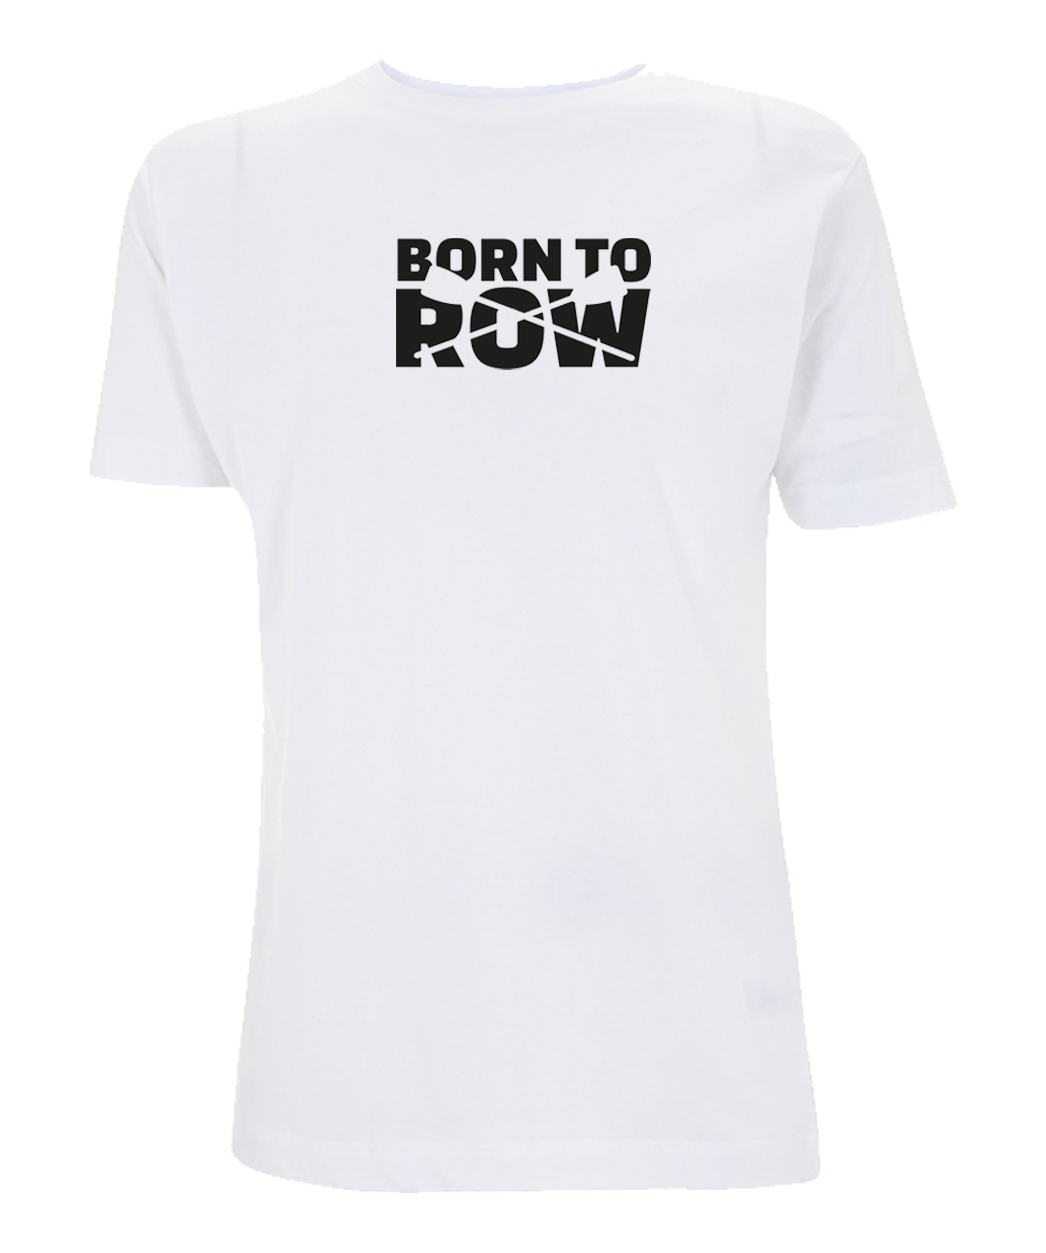 Born to Row T-Shirt